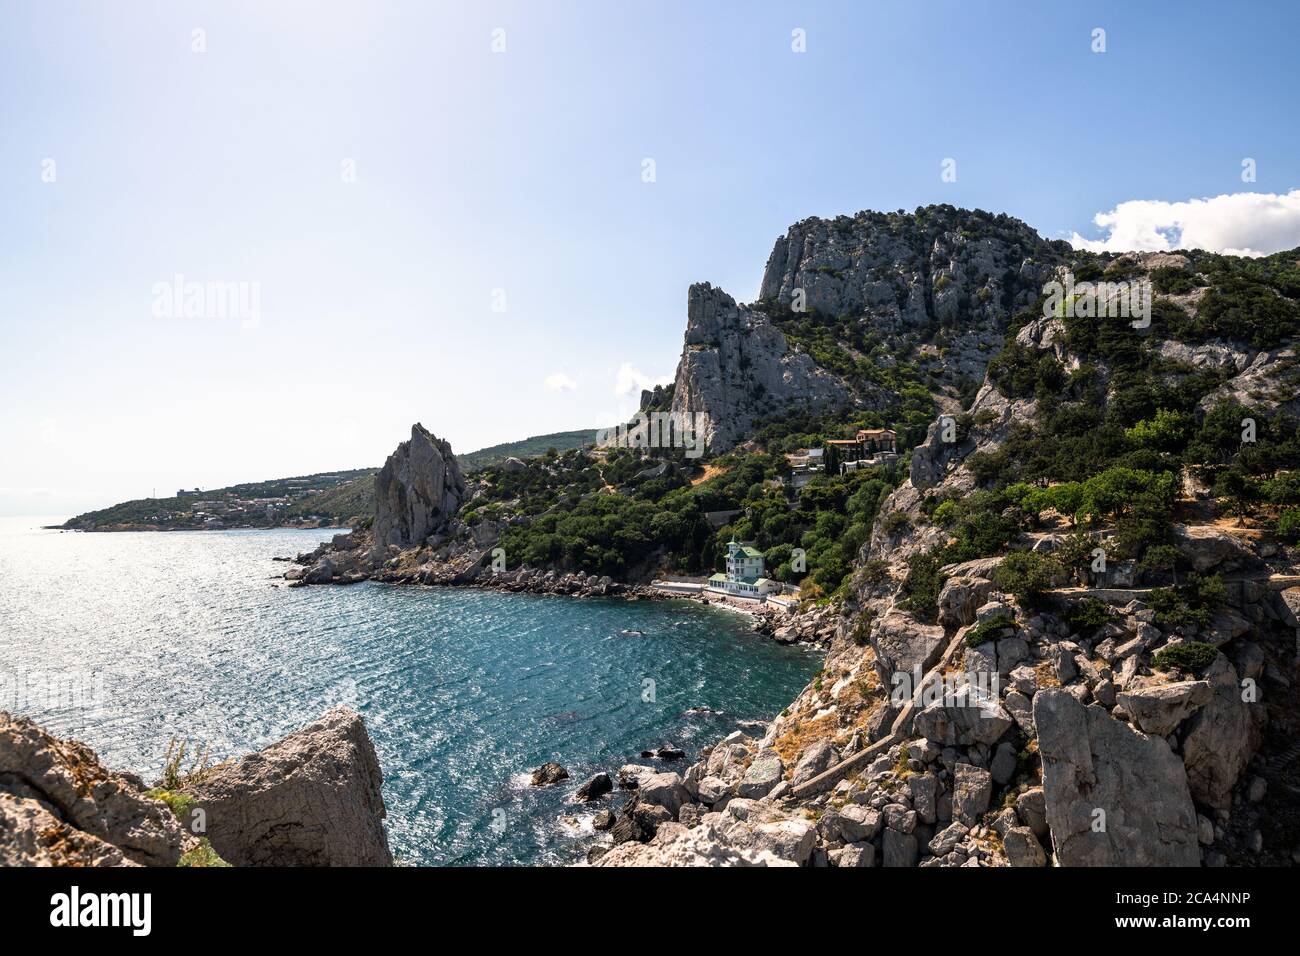 Landscape of a Koshka mountain with the Black Sea in Crimea Stock Photo